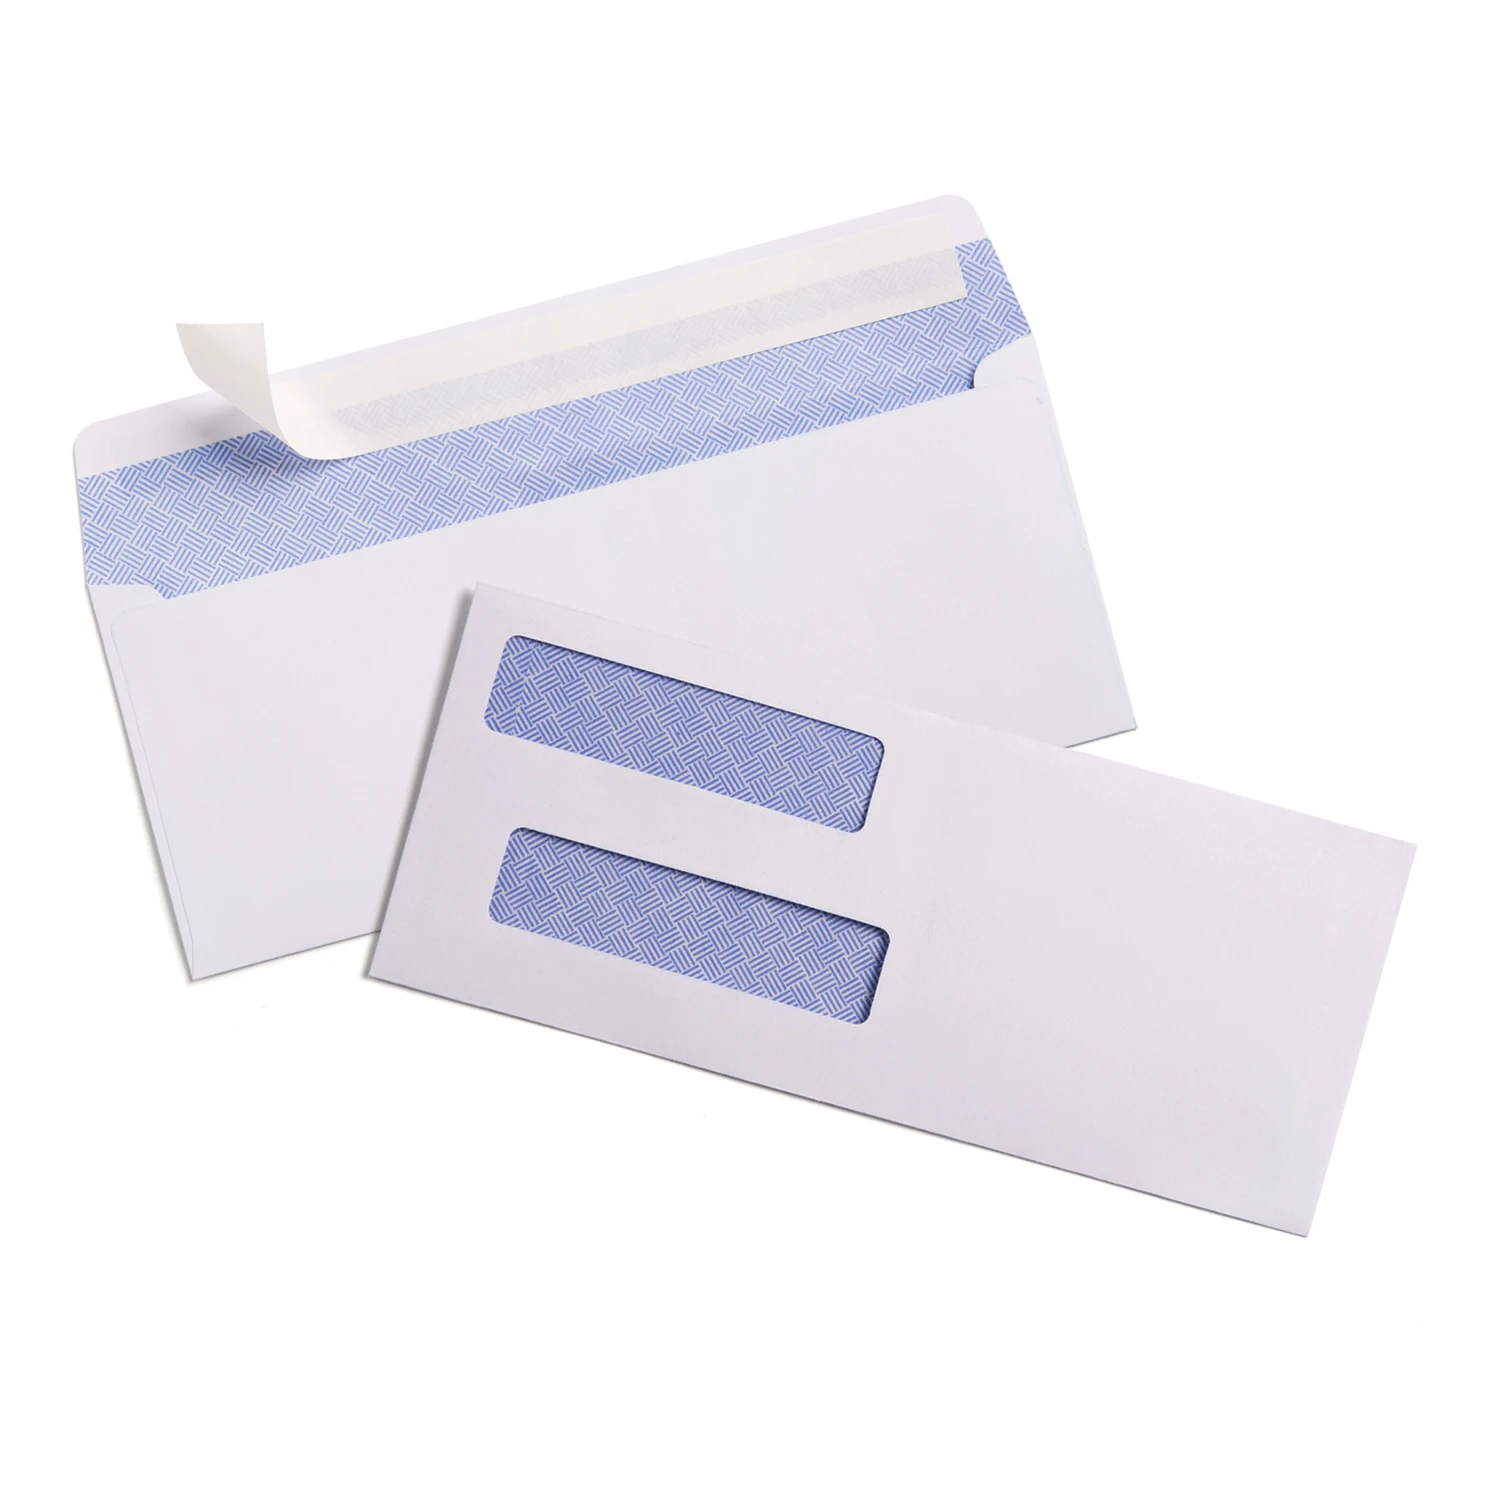 self seal envelopes for quickbooks checks